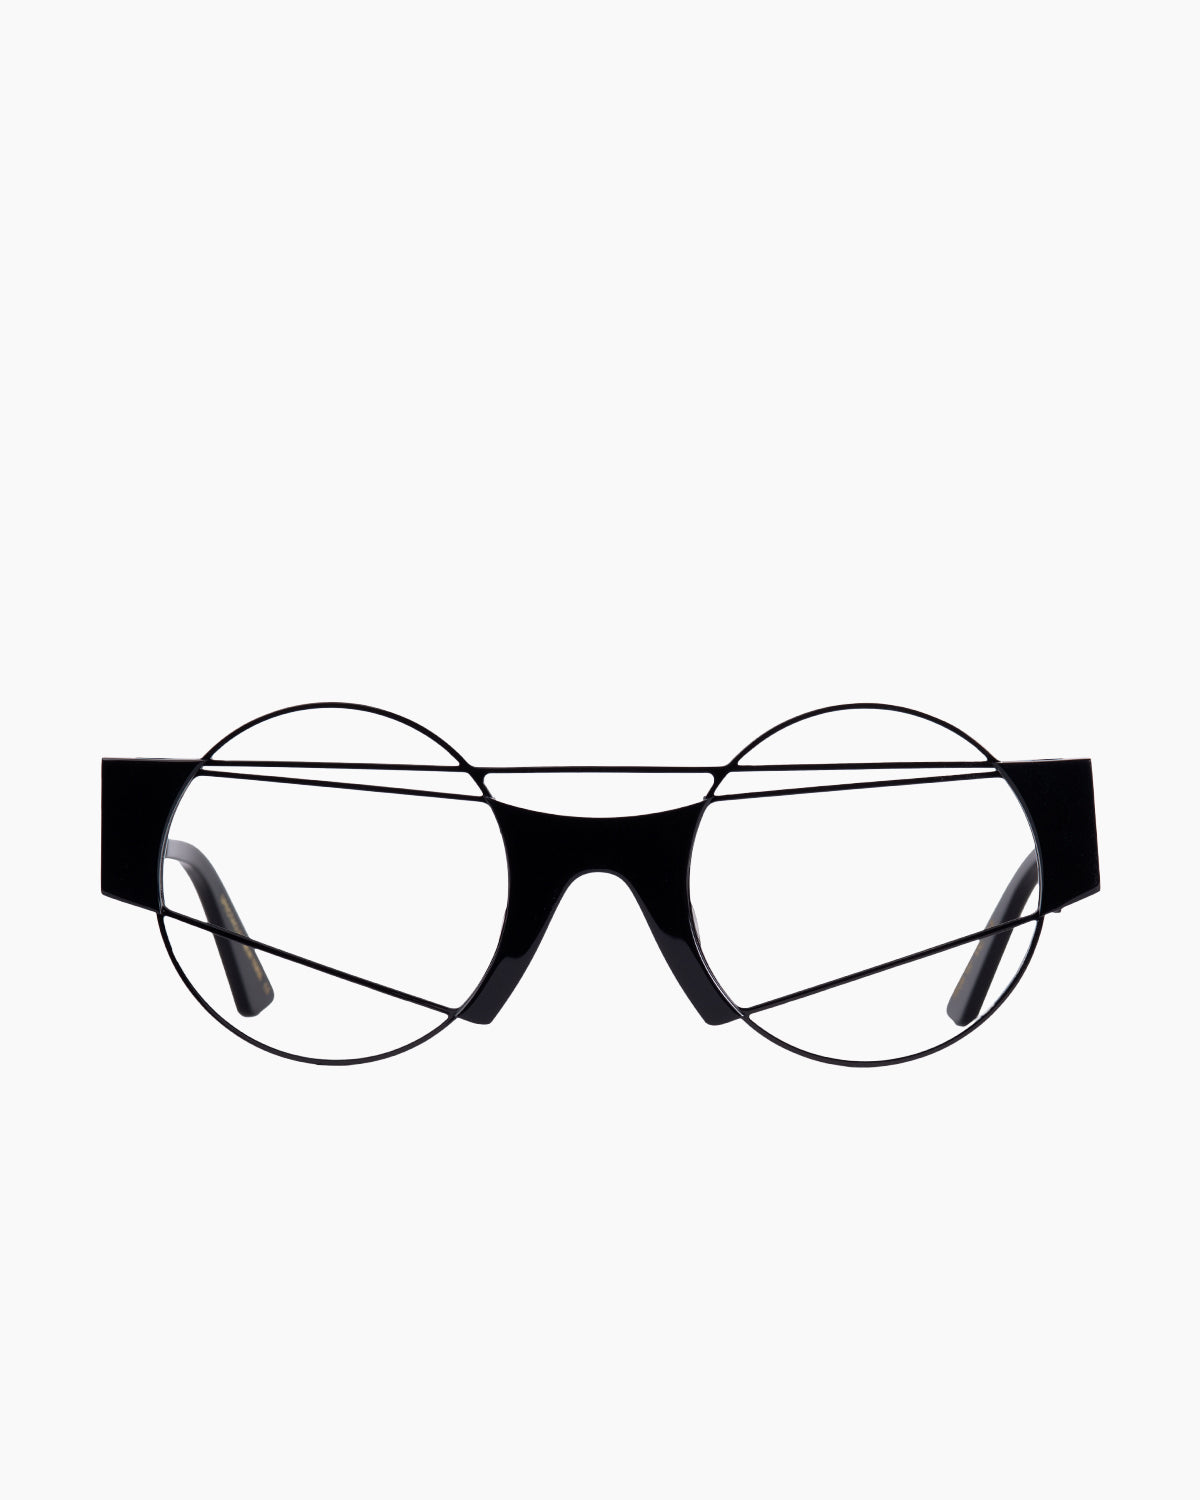 Gamine - Neukölln - Black/Black | Bar à lunettes